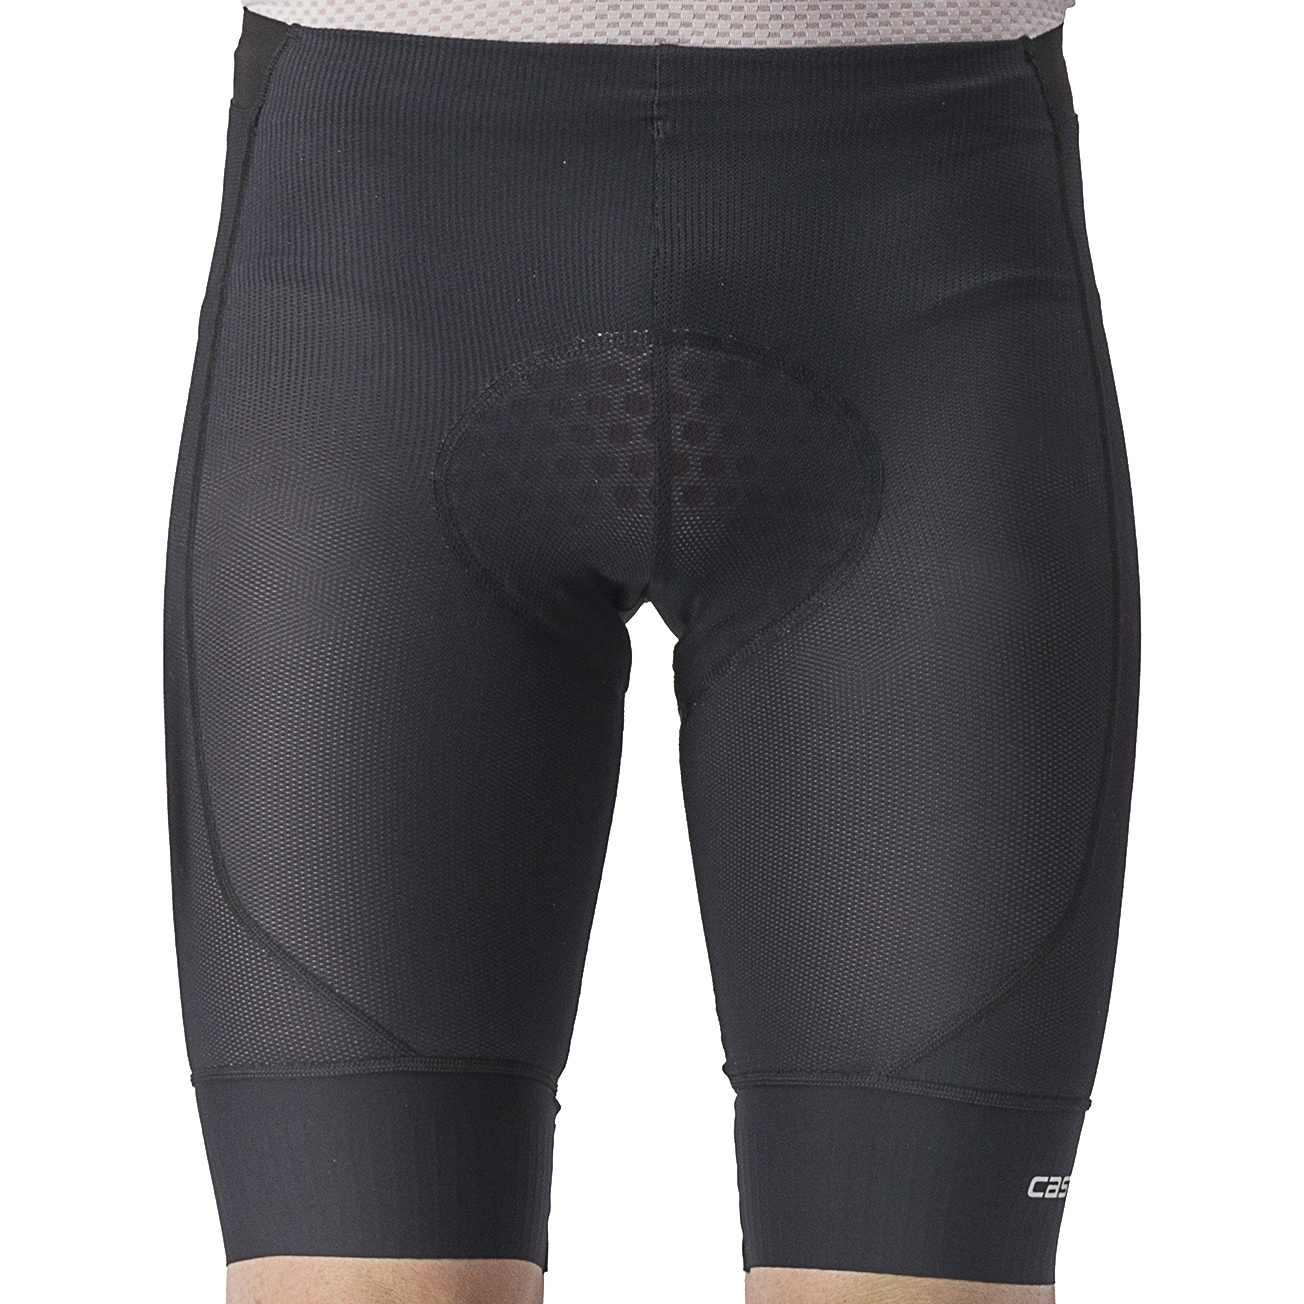 Produktbild von Castelli Trail Liner Shorts - schwarz 010